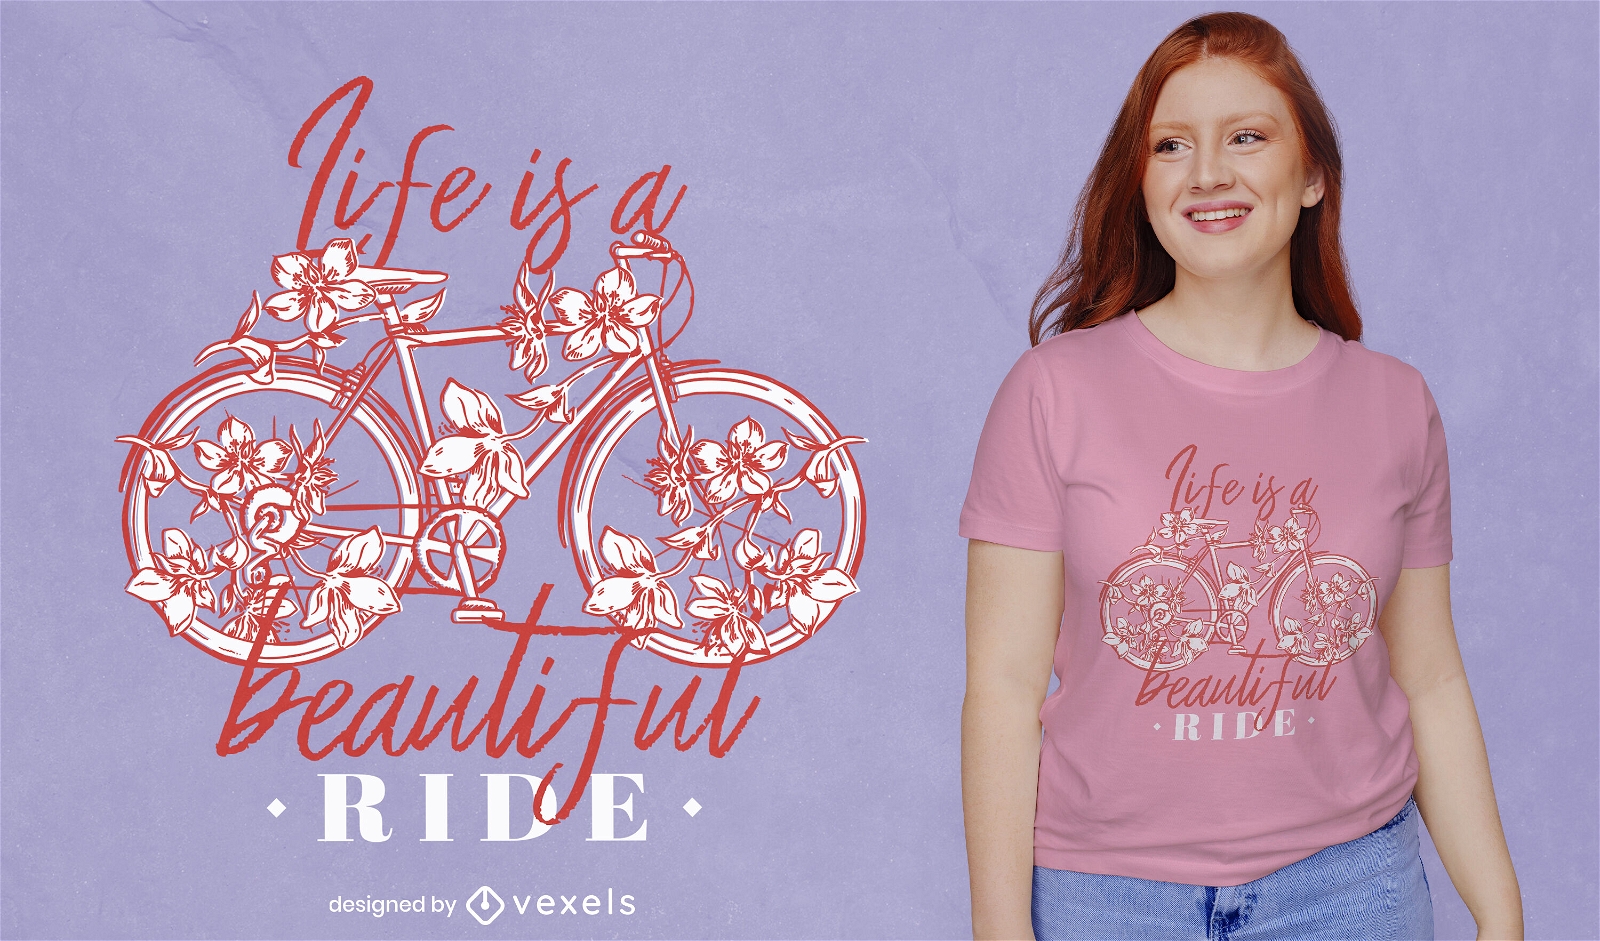 Dise?o de camiseta de bicicleta floral.